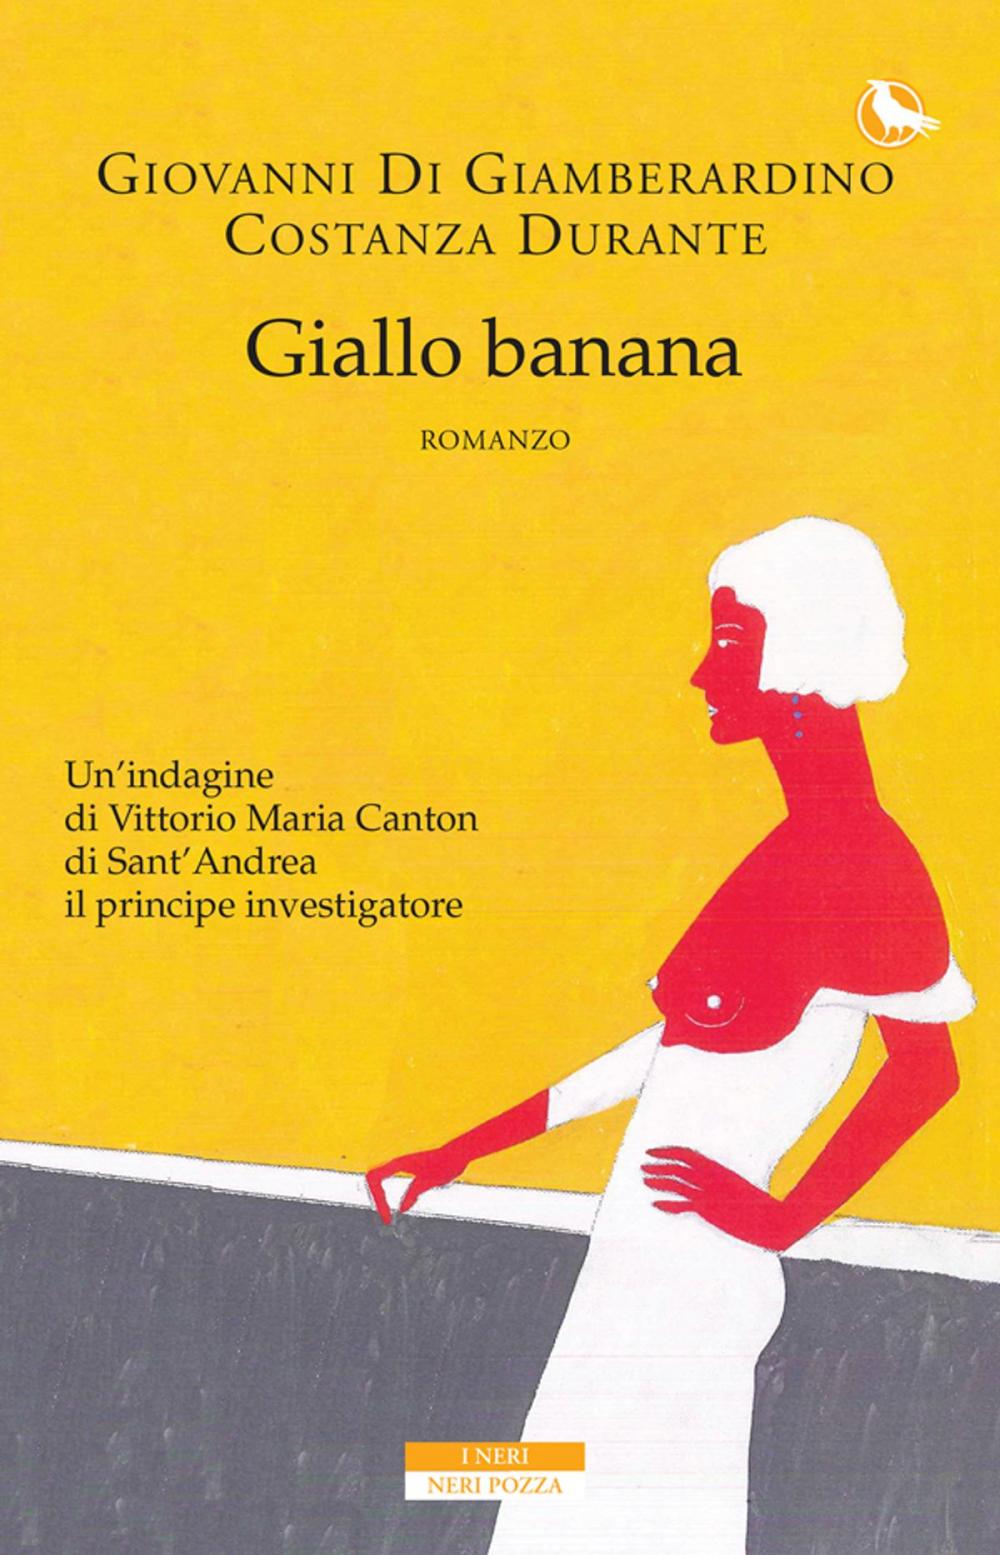 Big bigCover of Giallo banana